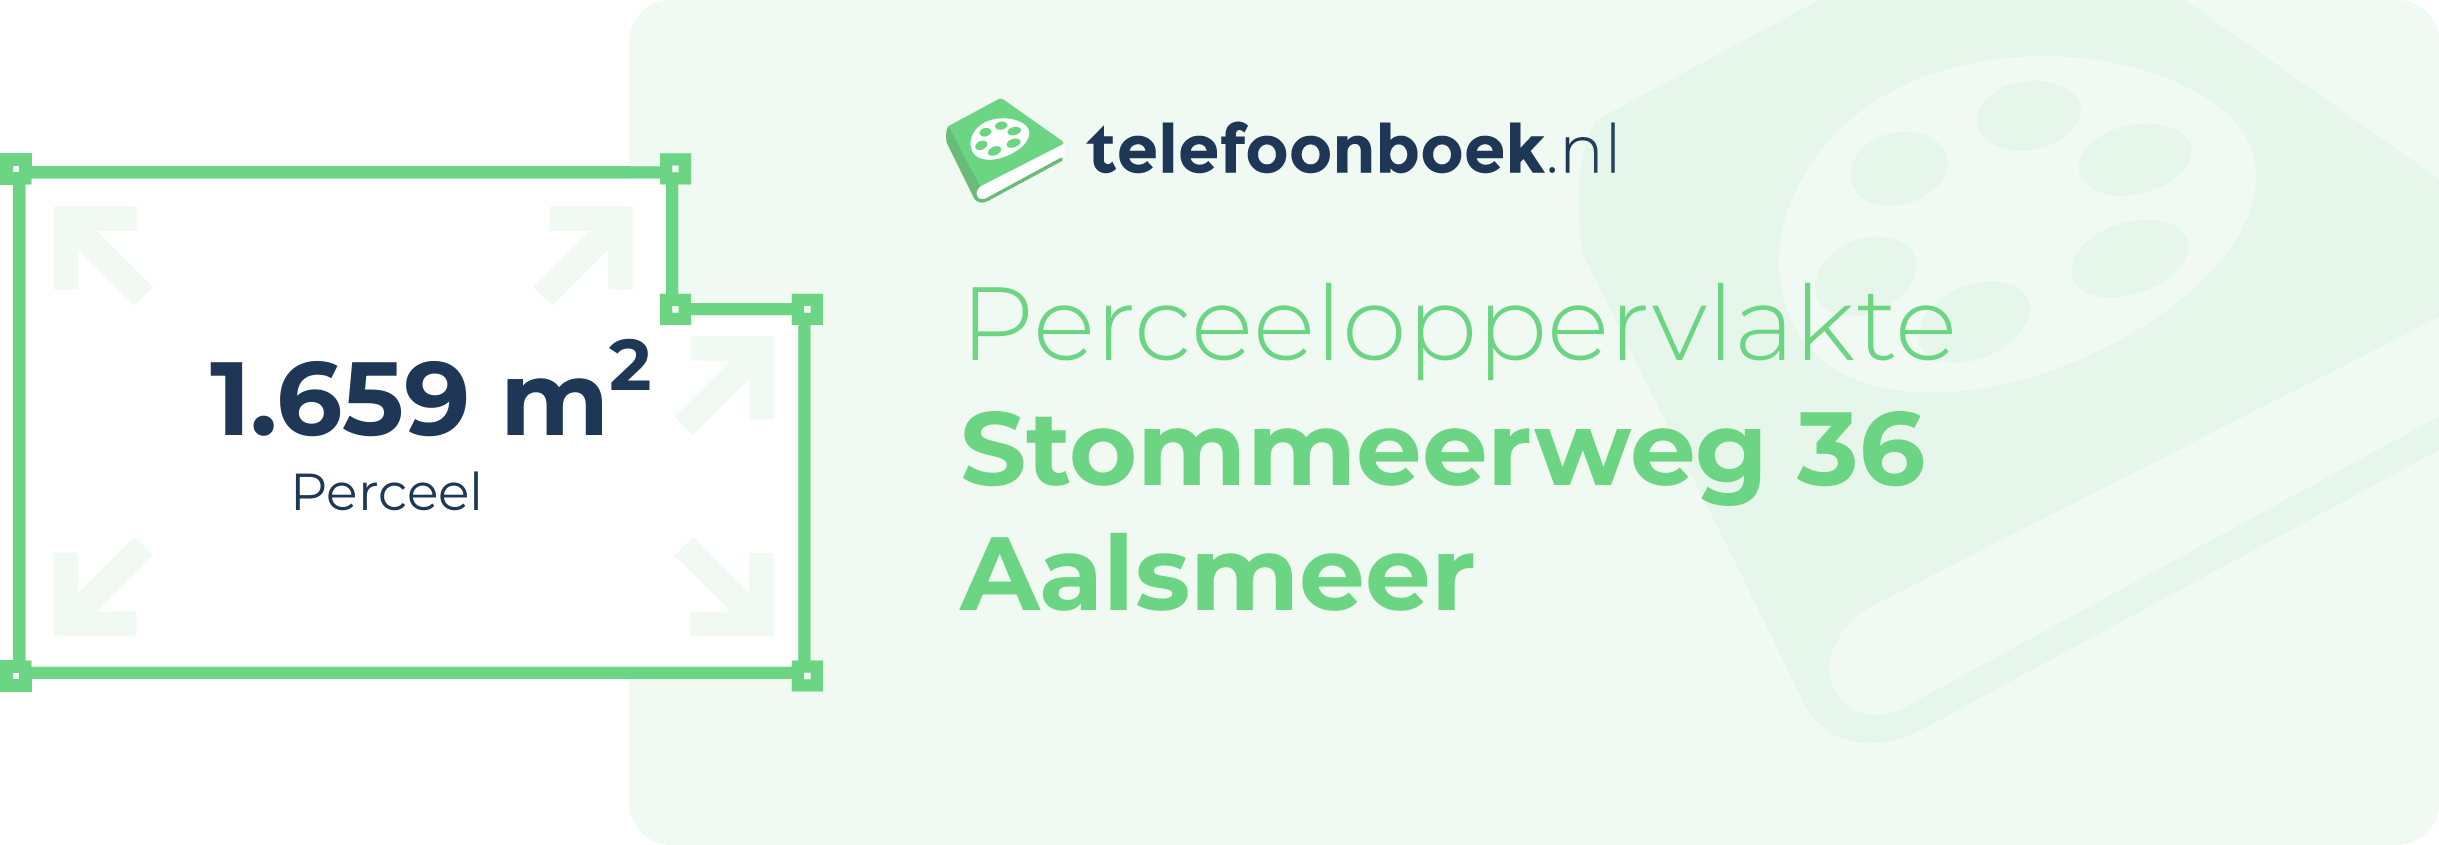 Perceeloppervlakte Stommeerweg 36 Aalsmeer